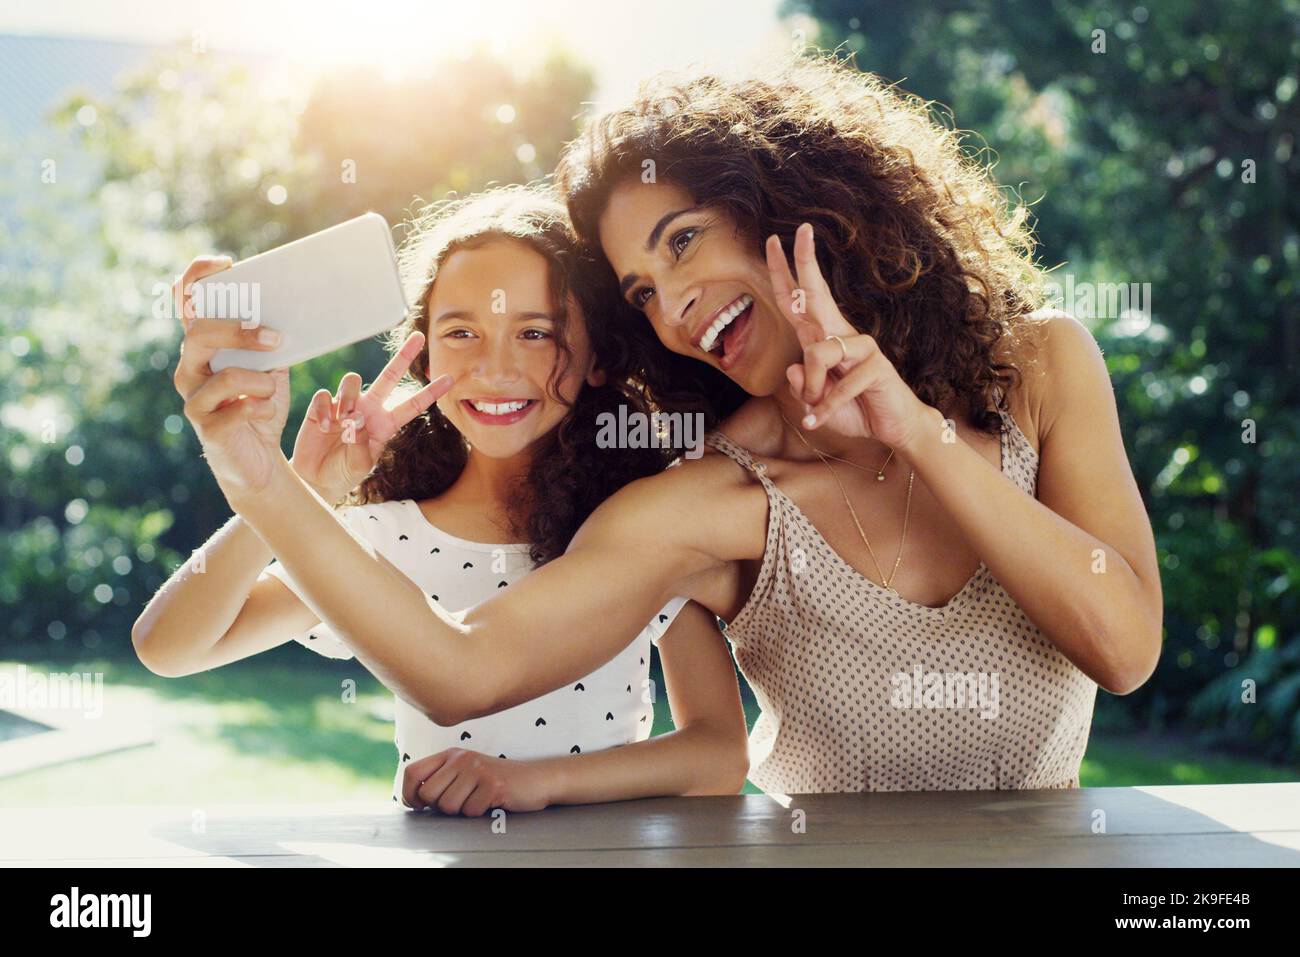 Wir haben immer die besten gemeinsamen Zeiten. Eine junge Mutter und ihre Tochter machen tagsüber gemeinsam Selfies im Park. Stockfoto